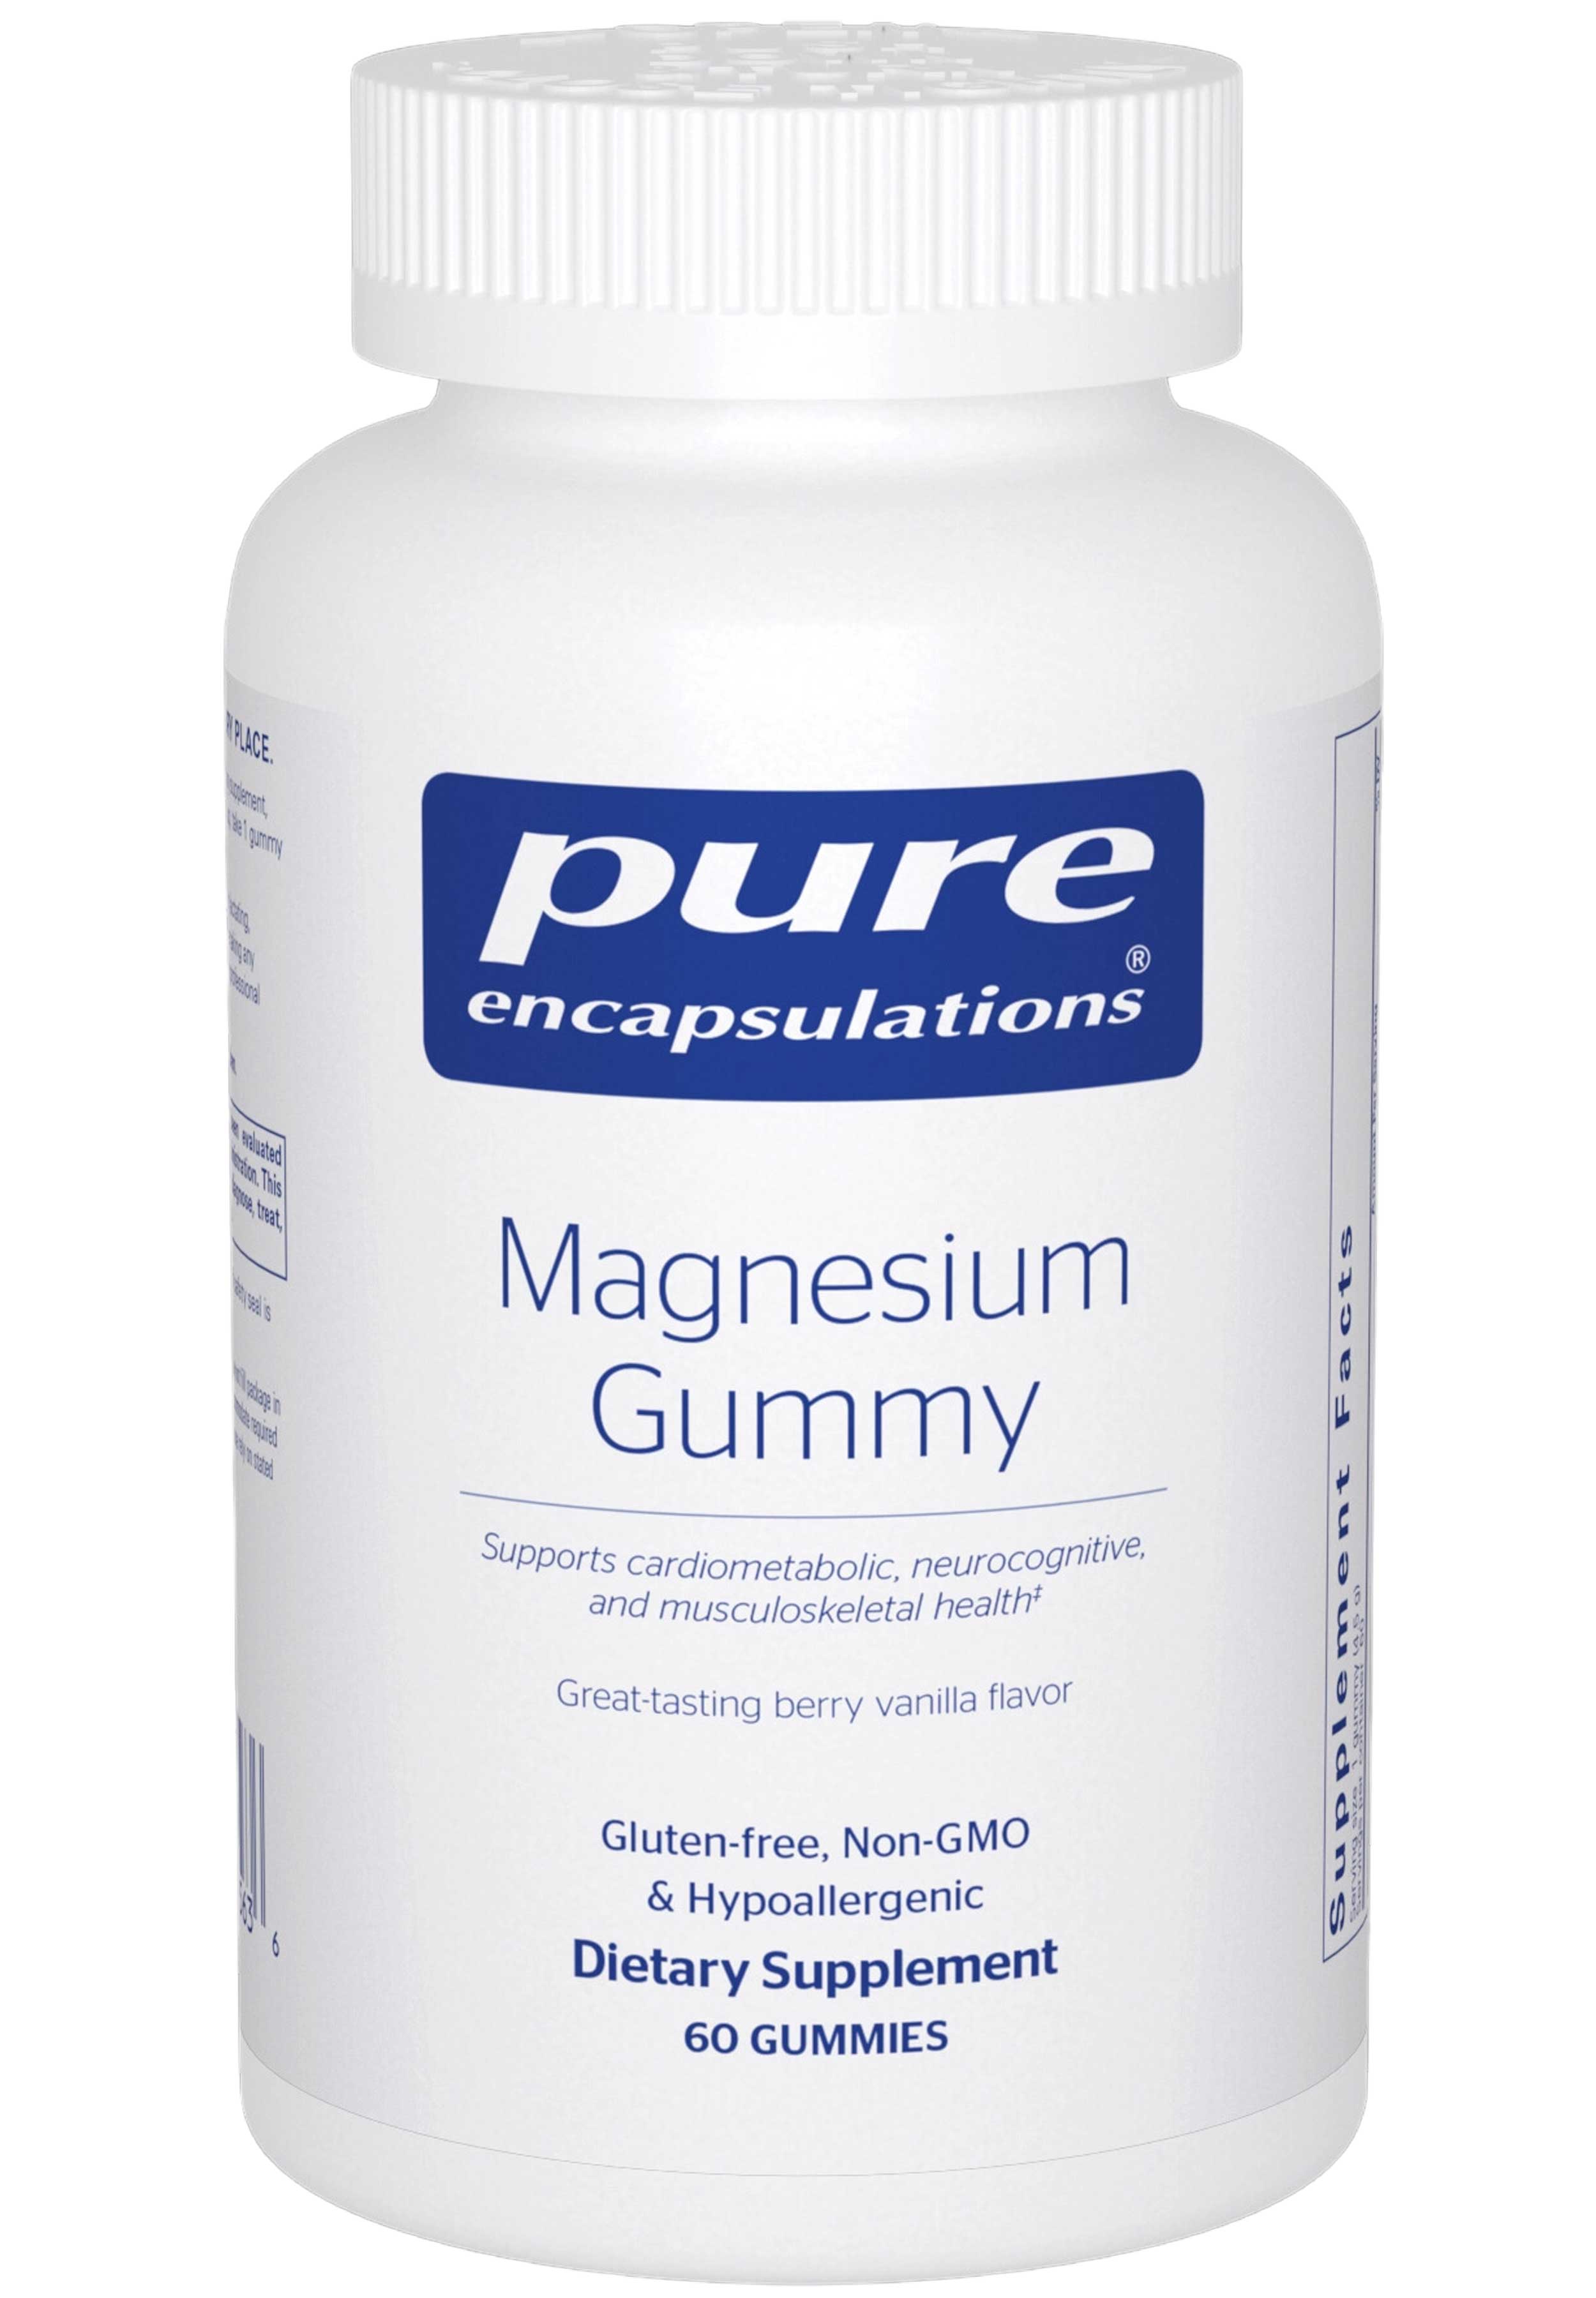 Pure Encapsulations Magnesium Gummy